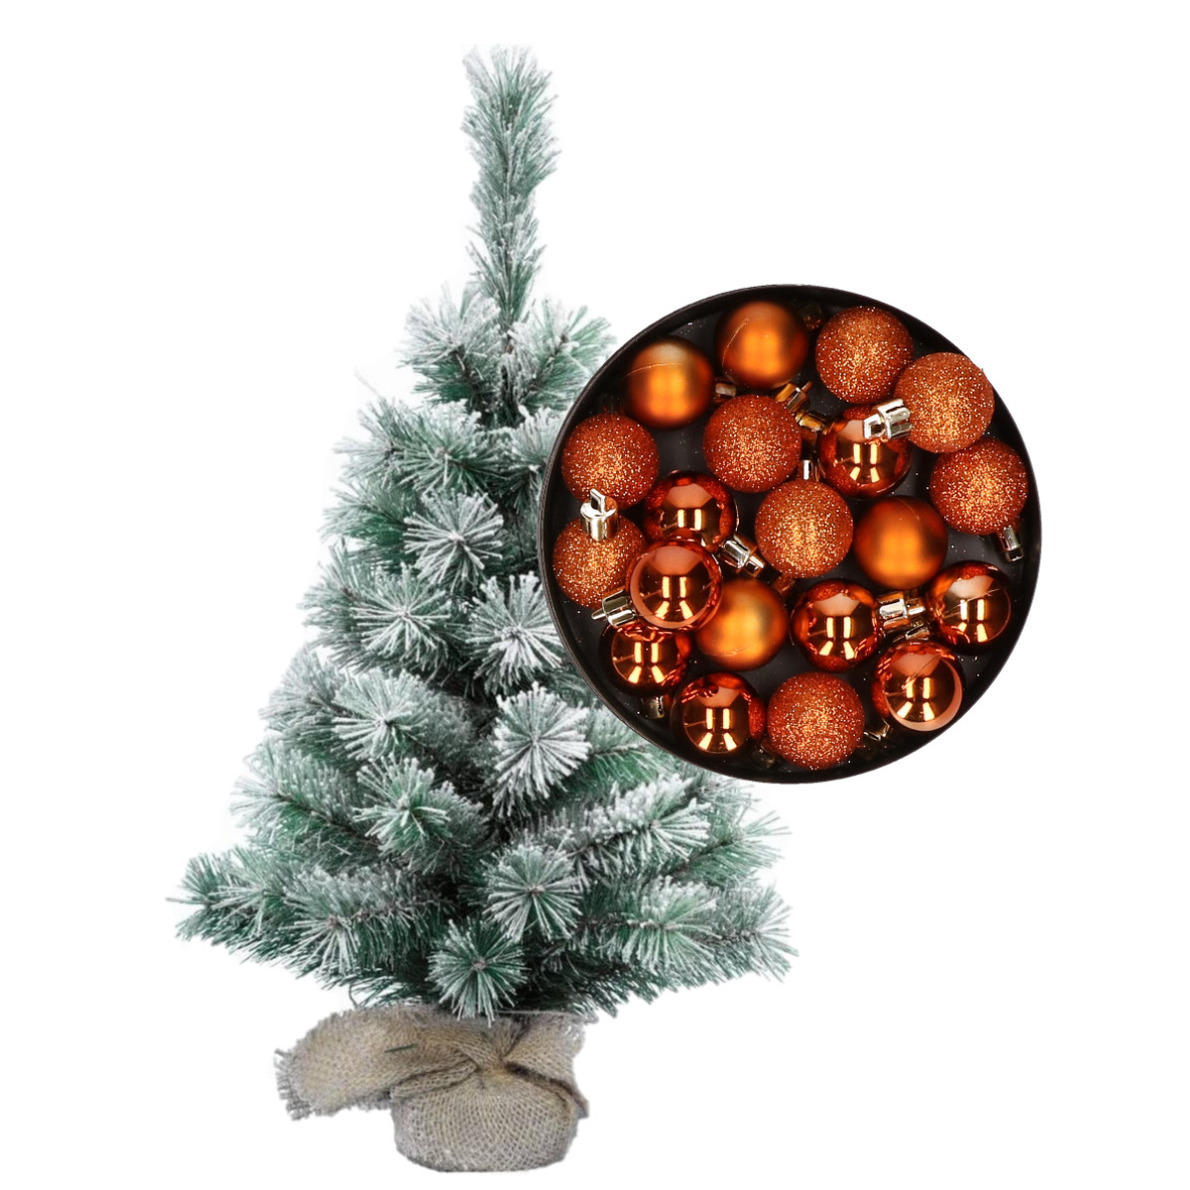 Besneeuwde mini kerstboom-kunst kerstboom 35 cm met kerstballen oranje